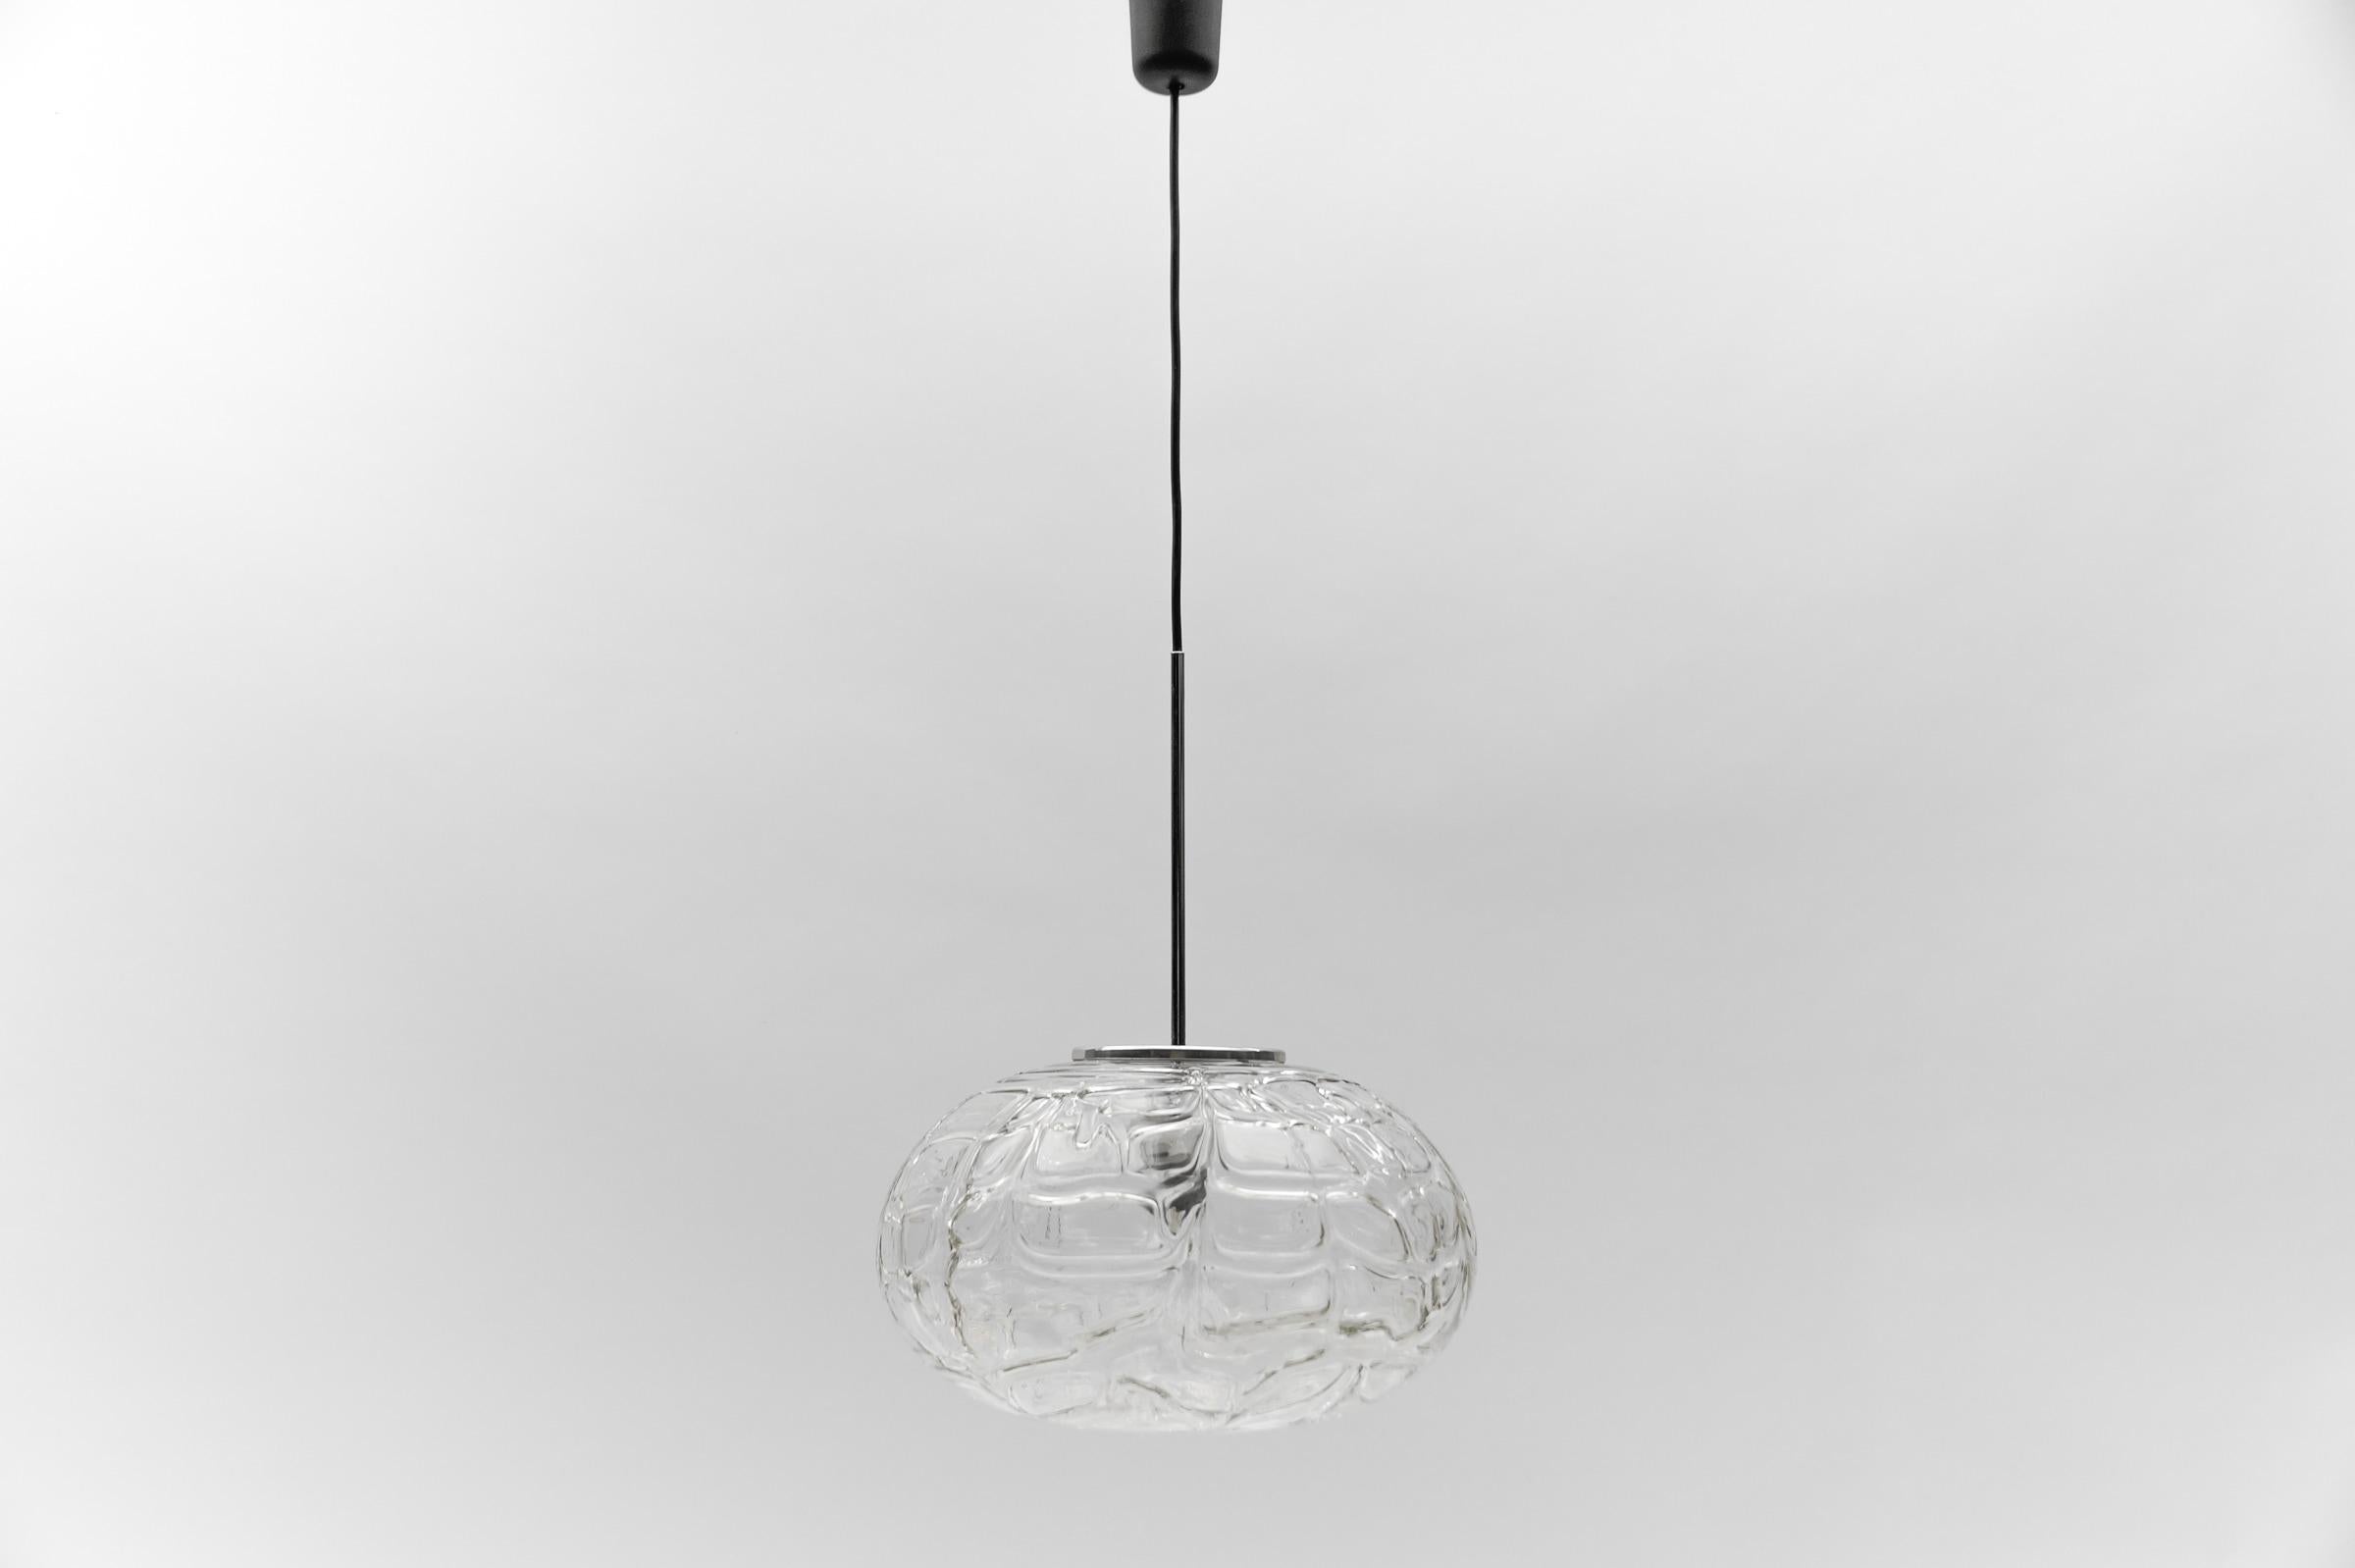 Große ovale Murano-Klarglas-Kugel-Hängeleuchte von Doria, 1960er Jahre Deutschland

Abmessungen
Durchmesser: 38 cm (14,96 Zoll)
Höhe: 95 cm (37.40 in.)

Eine E27-Fassung. Funktioniert mit 220V und 110V.

Unsere Lampen werden geprüft, gereinigt und